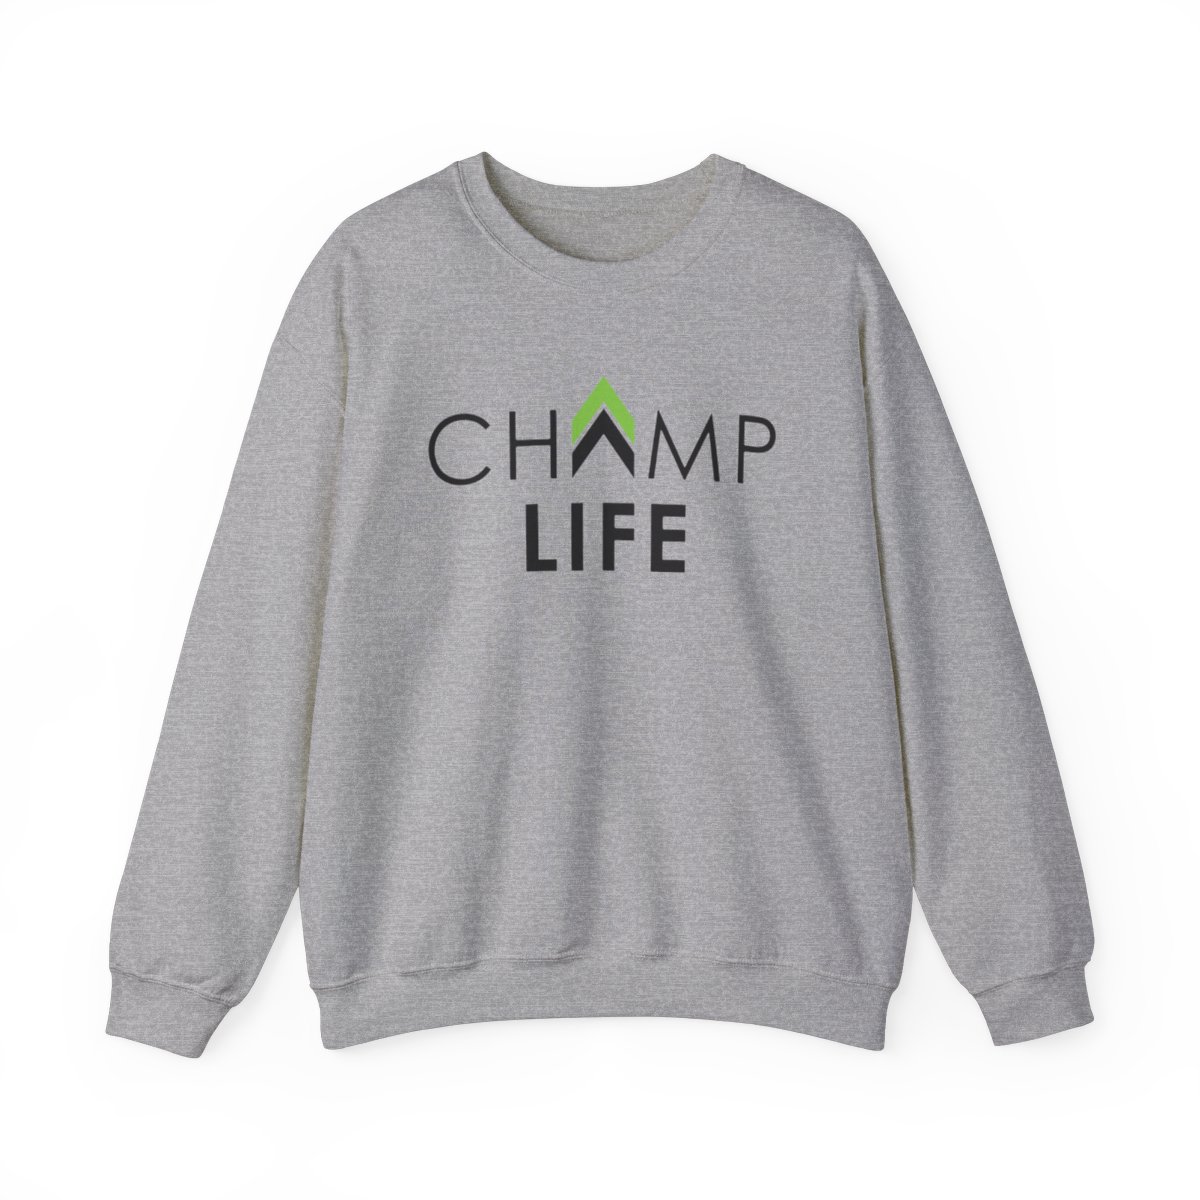 Champ Life Unisex Crewneck Sweatshirt - White, Gray product main image